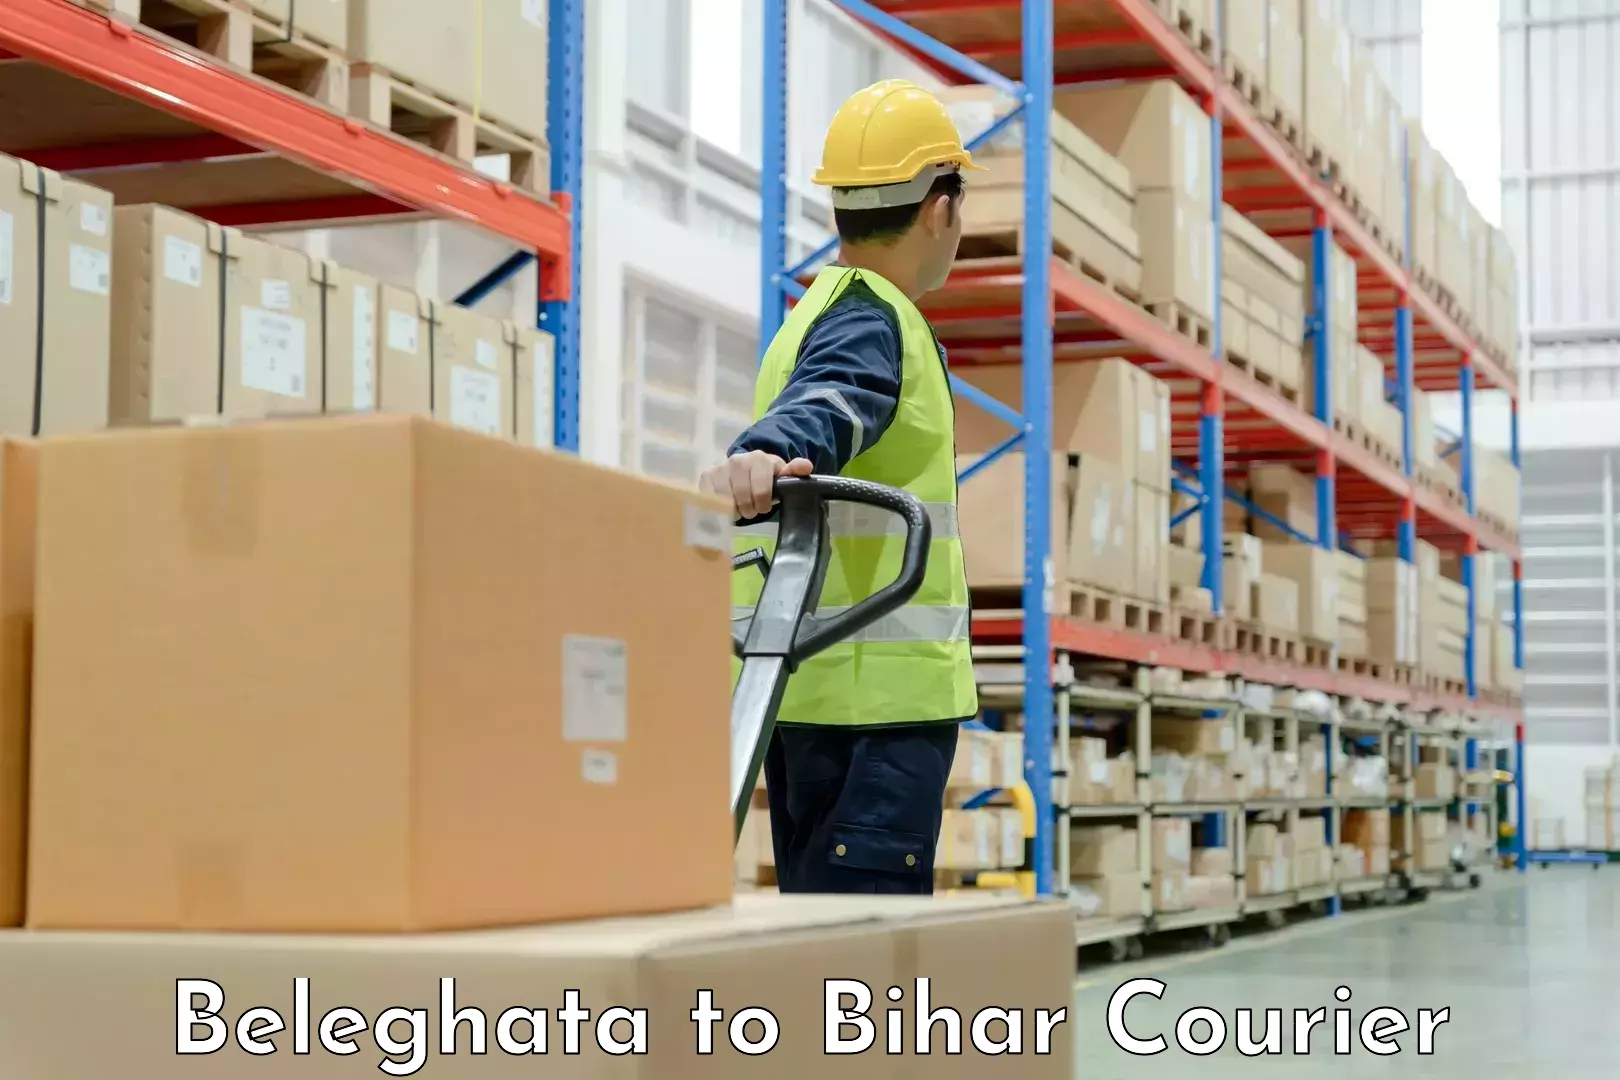 Full-service household moving Beleghata to Bihar